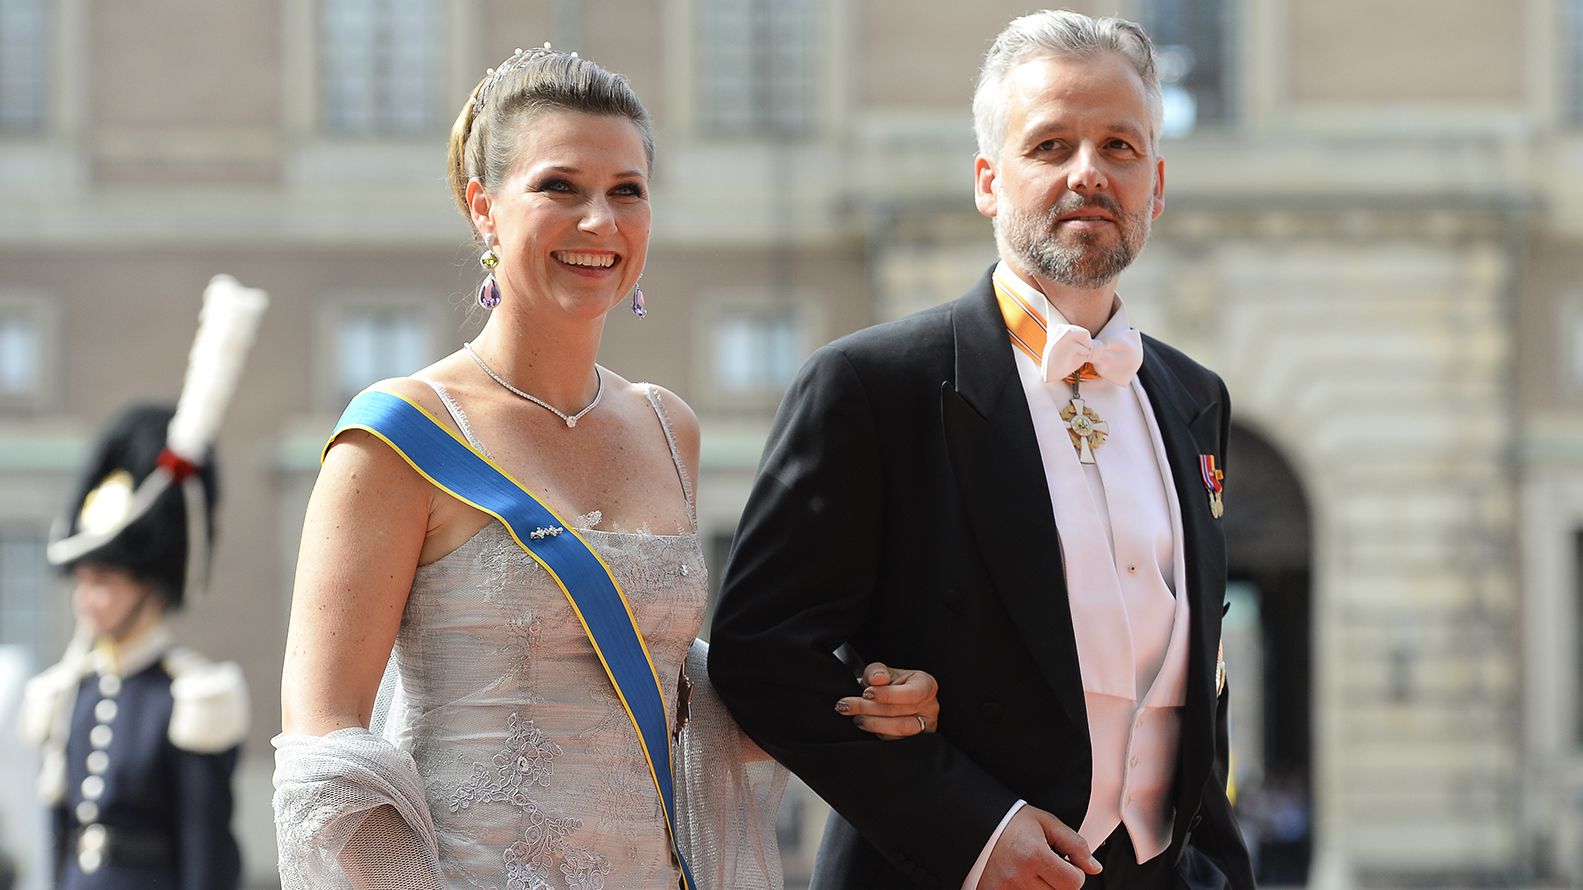 El pintor y escritor Ari Behn junto a su ex esposa la Princesa Marta Luisa en junio de 2013 (AFP)